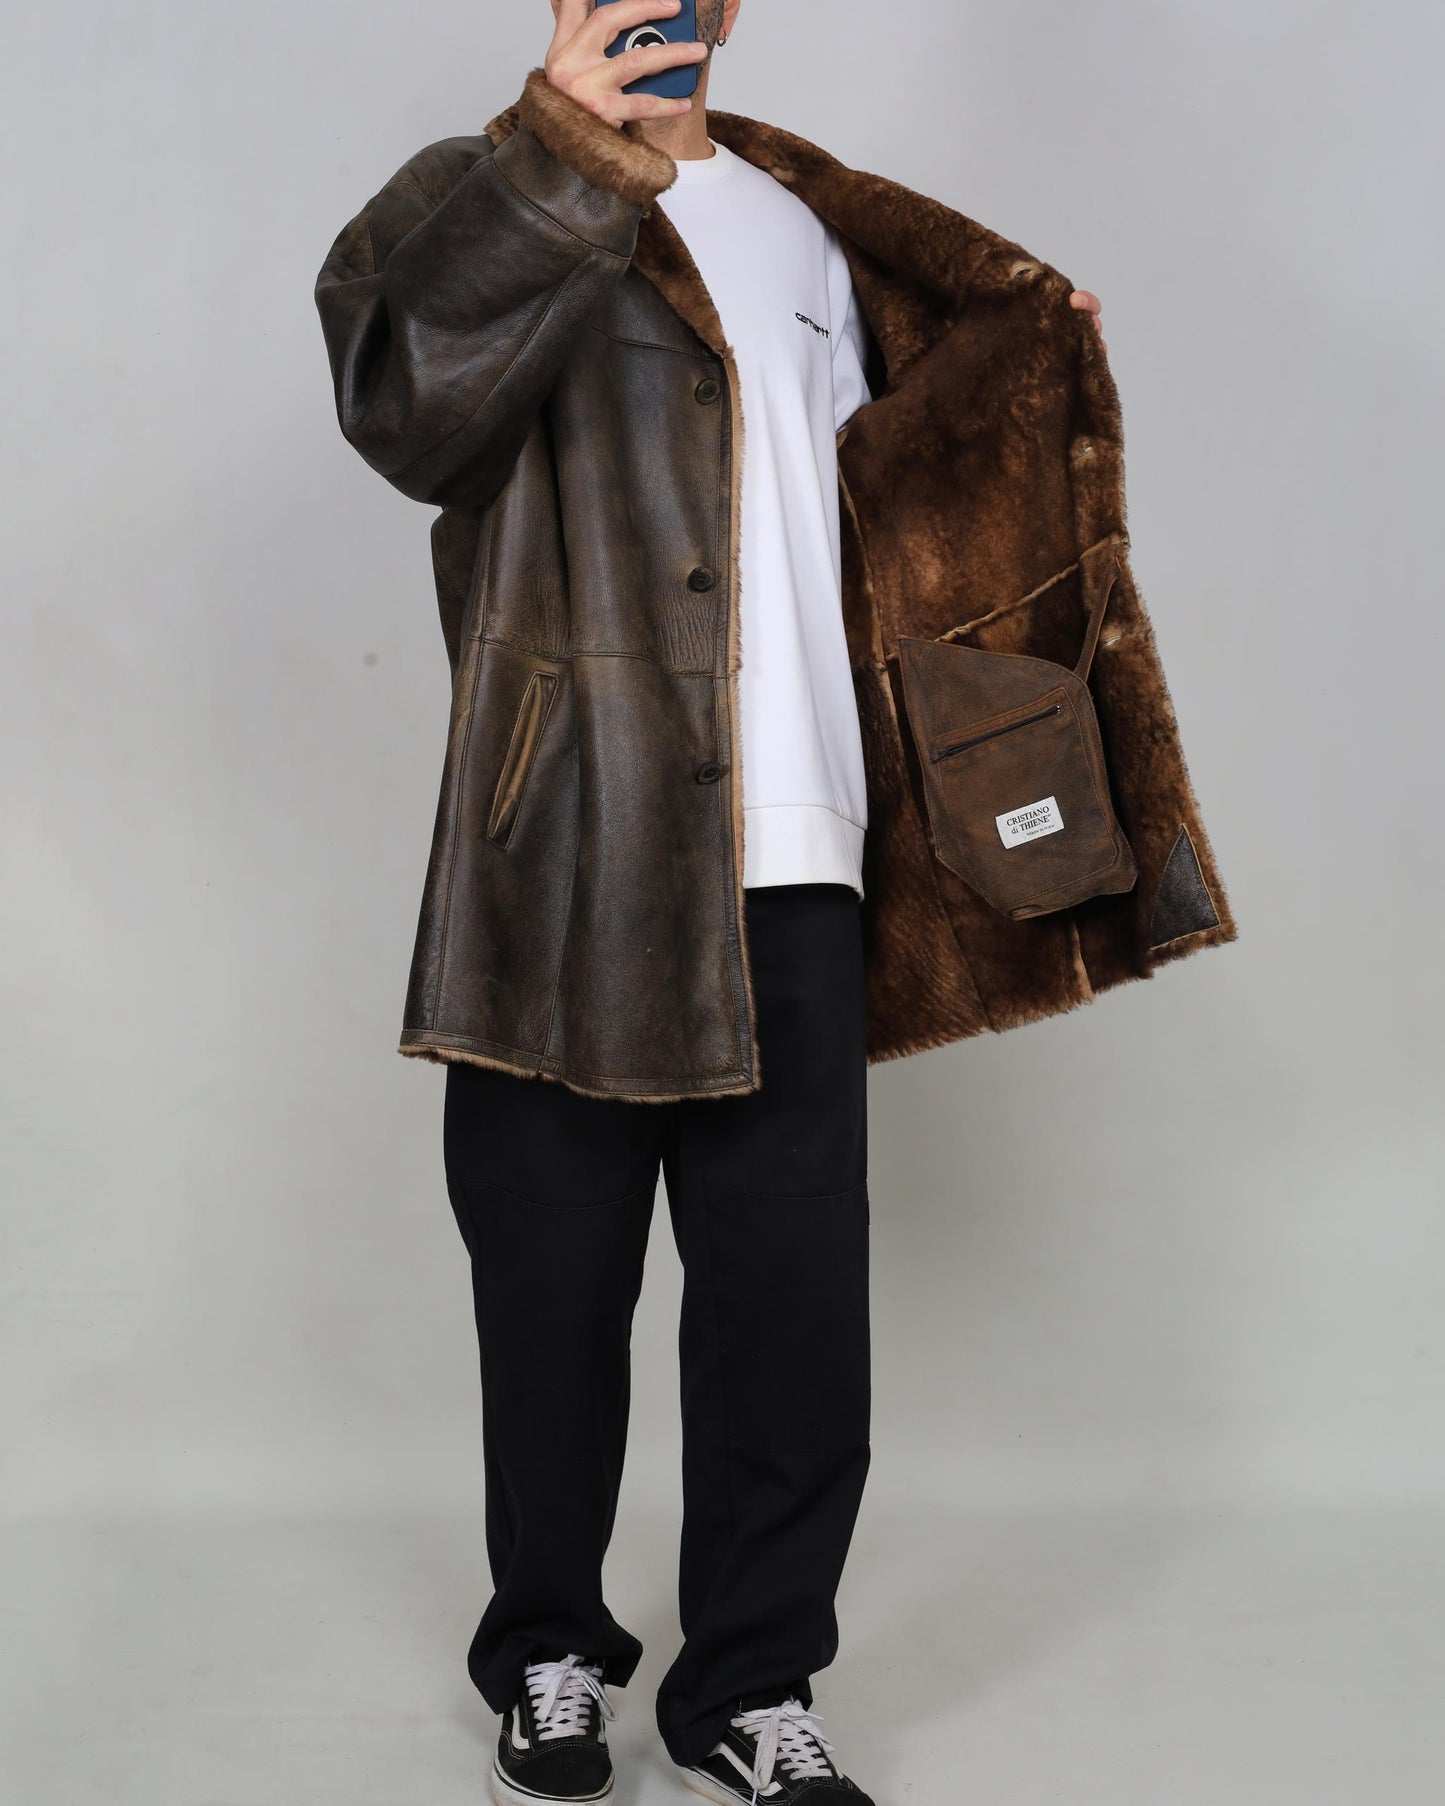 Vintage Cristiano di Thiene Leather Coat